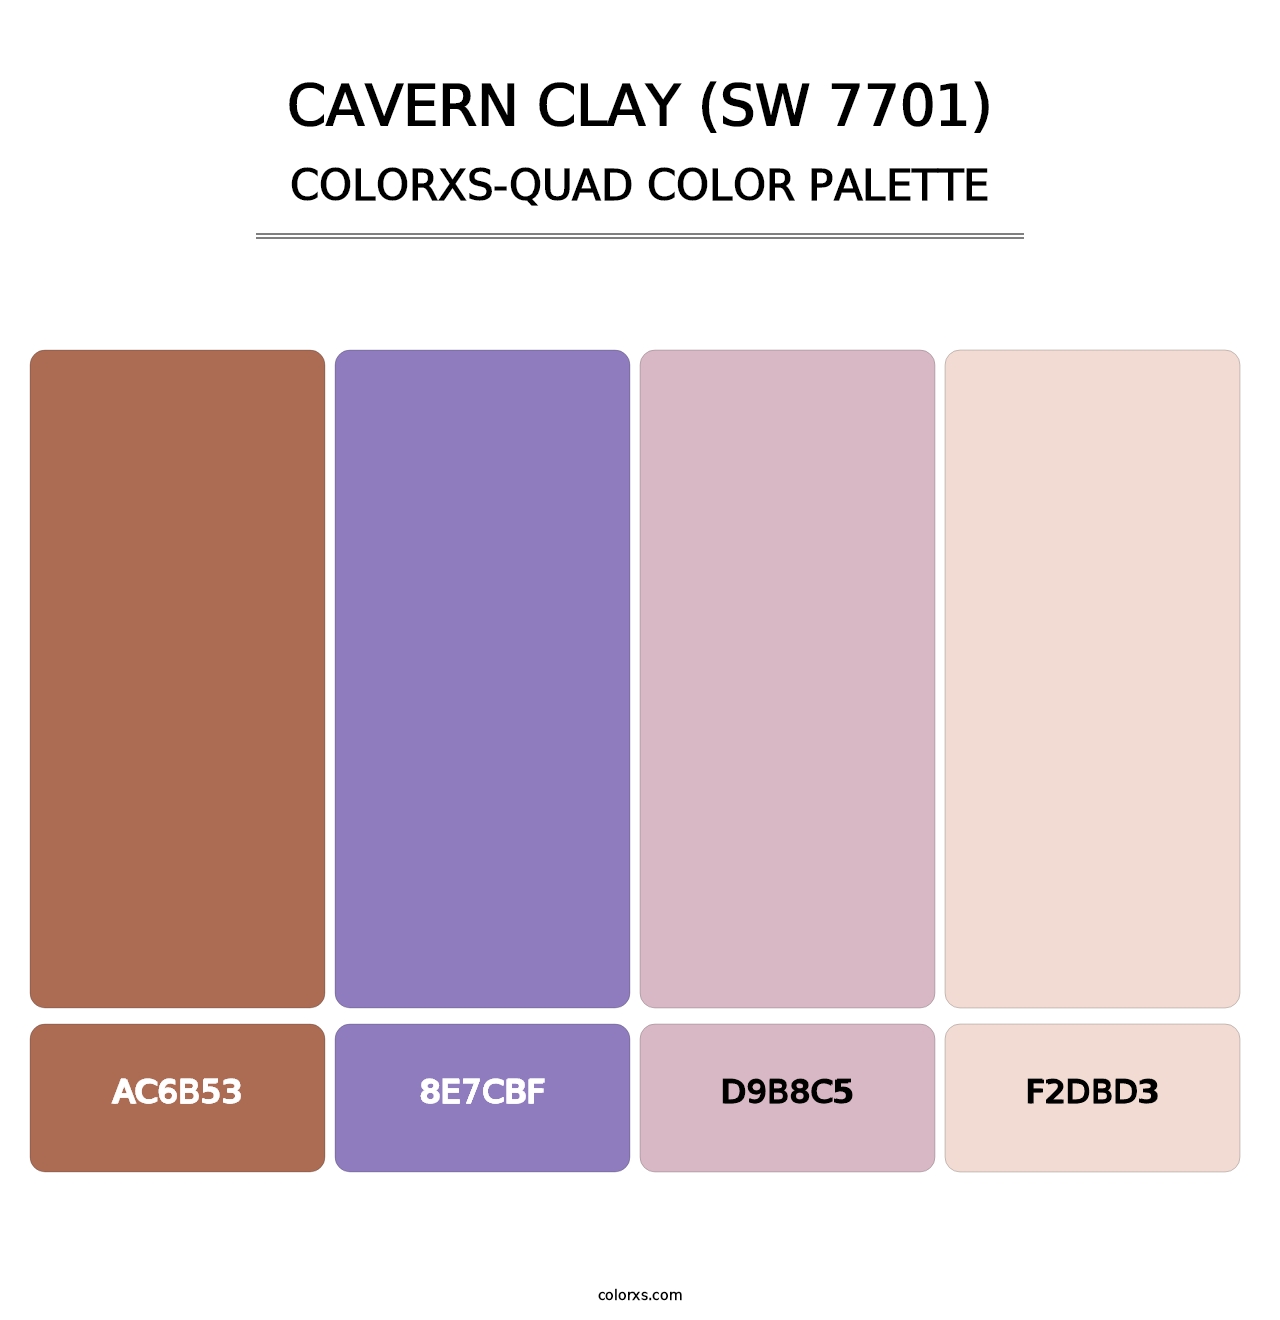 Cavern Clay (SW 7701) - Colorxs Quad Palette